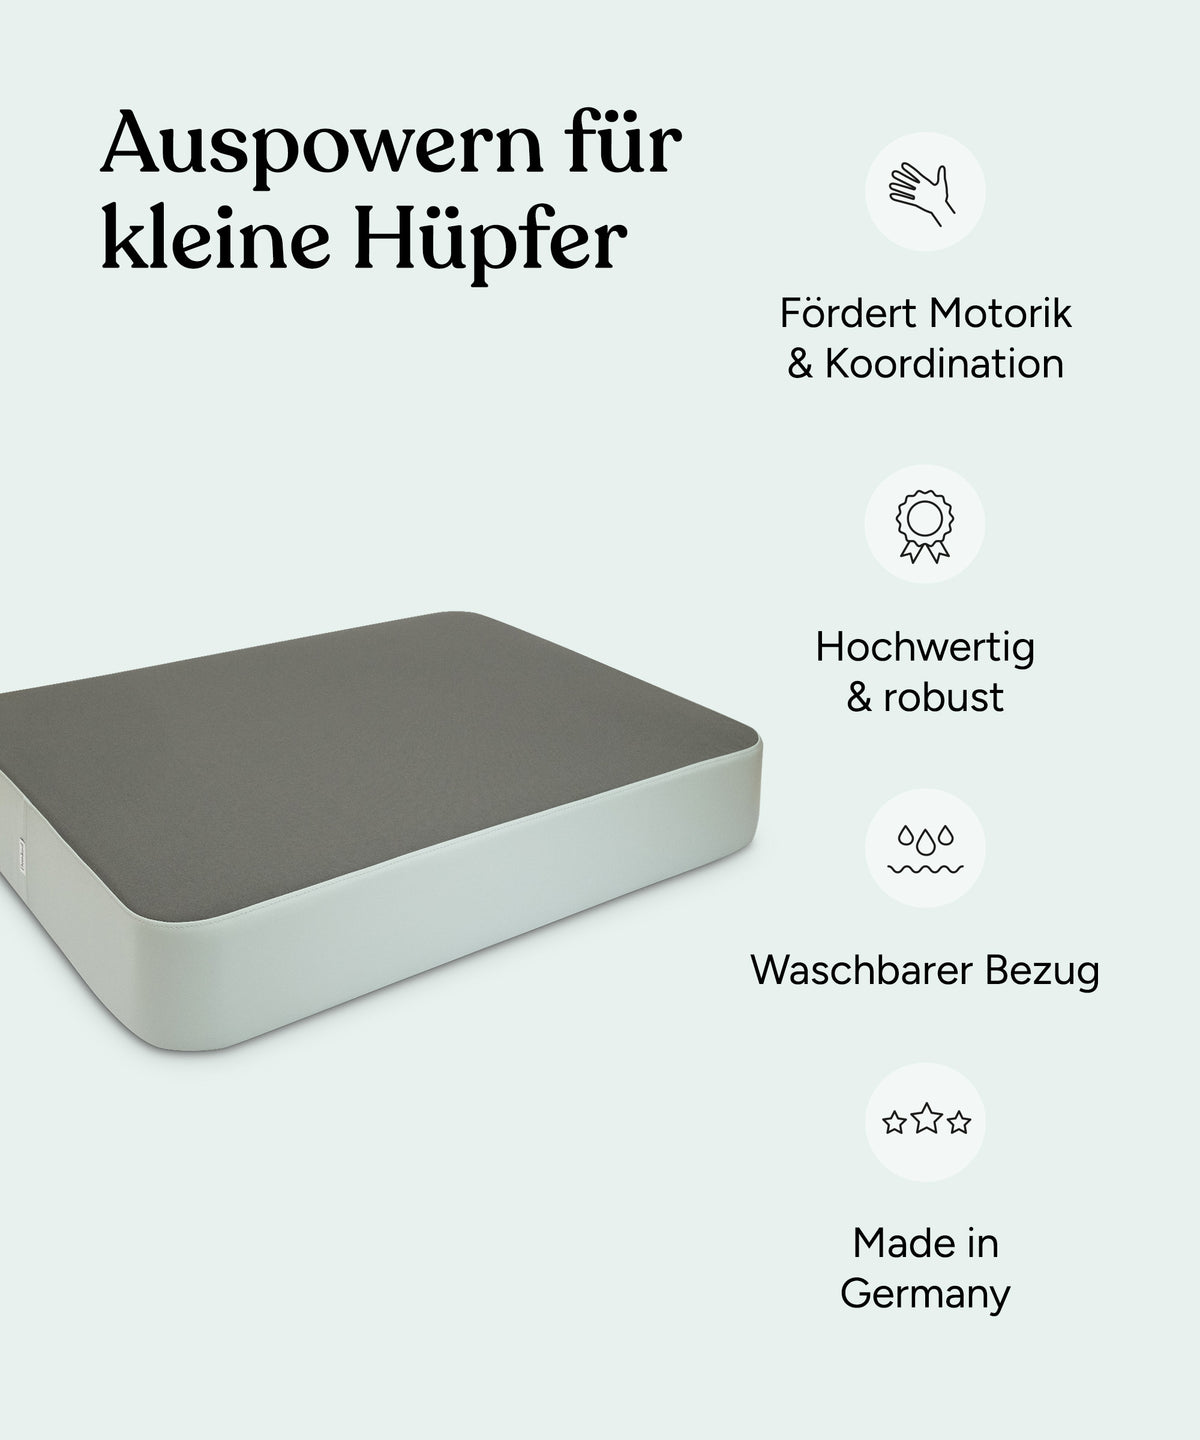 Vorteile des Hüpfkissens: Fördert Motorik und Koordination, hochwertig und robust, waschbarer Bezug, Made in Germany.